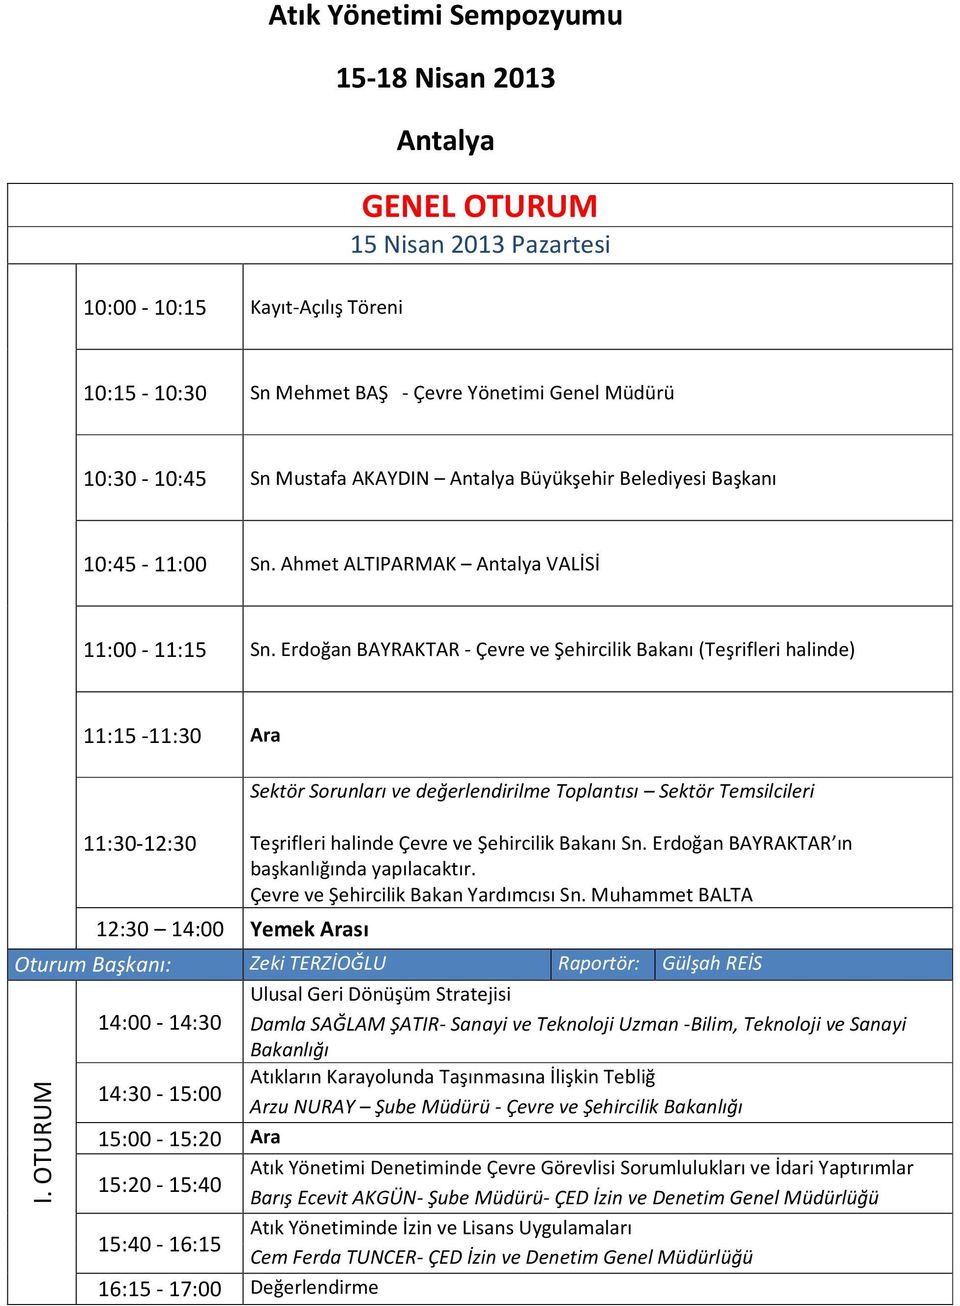 Erdoğan BAYRAKTAR - Çevre ve Şehircilik Bakanı (Teşrifleri halinde) 11:15-11:30 Ara 11:30-12:30 Sektör Sorunları ve değerlendirilme Toplantısı Sektör Temsilcileri Teşrifleri halinde Çevre ve